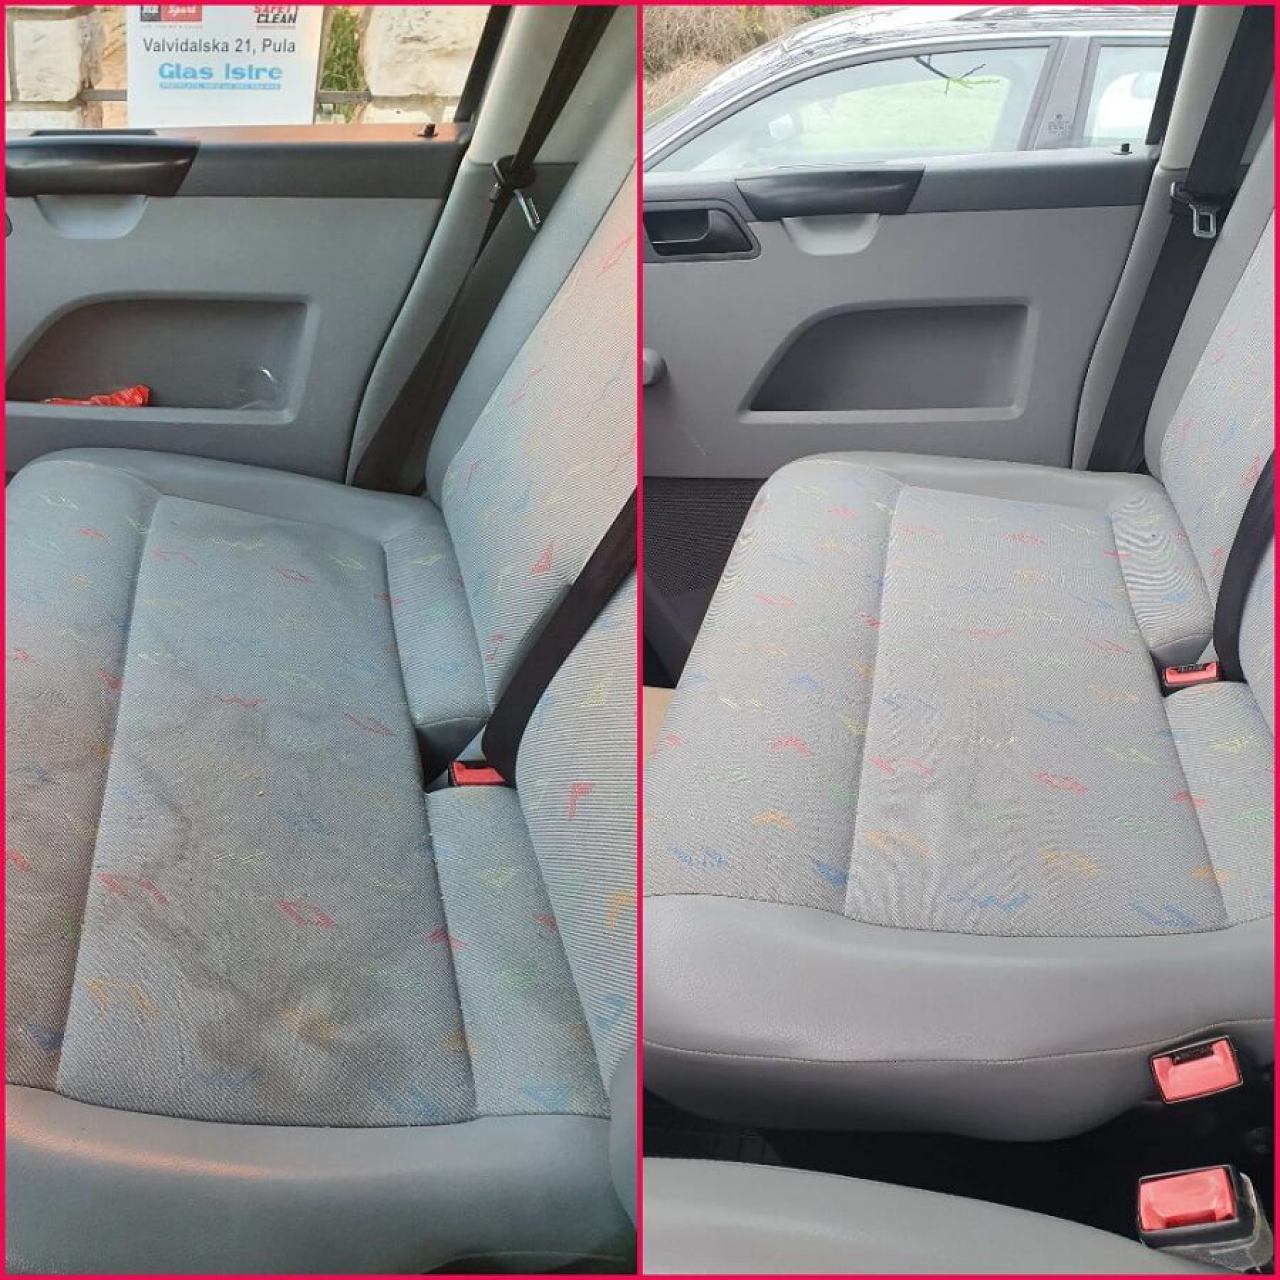 Čišćenje sjedala automobila, prije i poslije